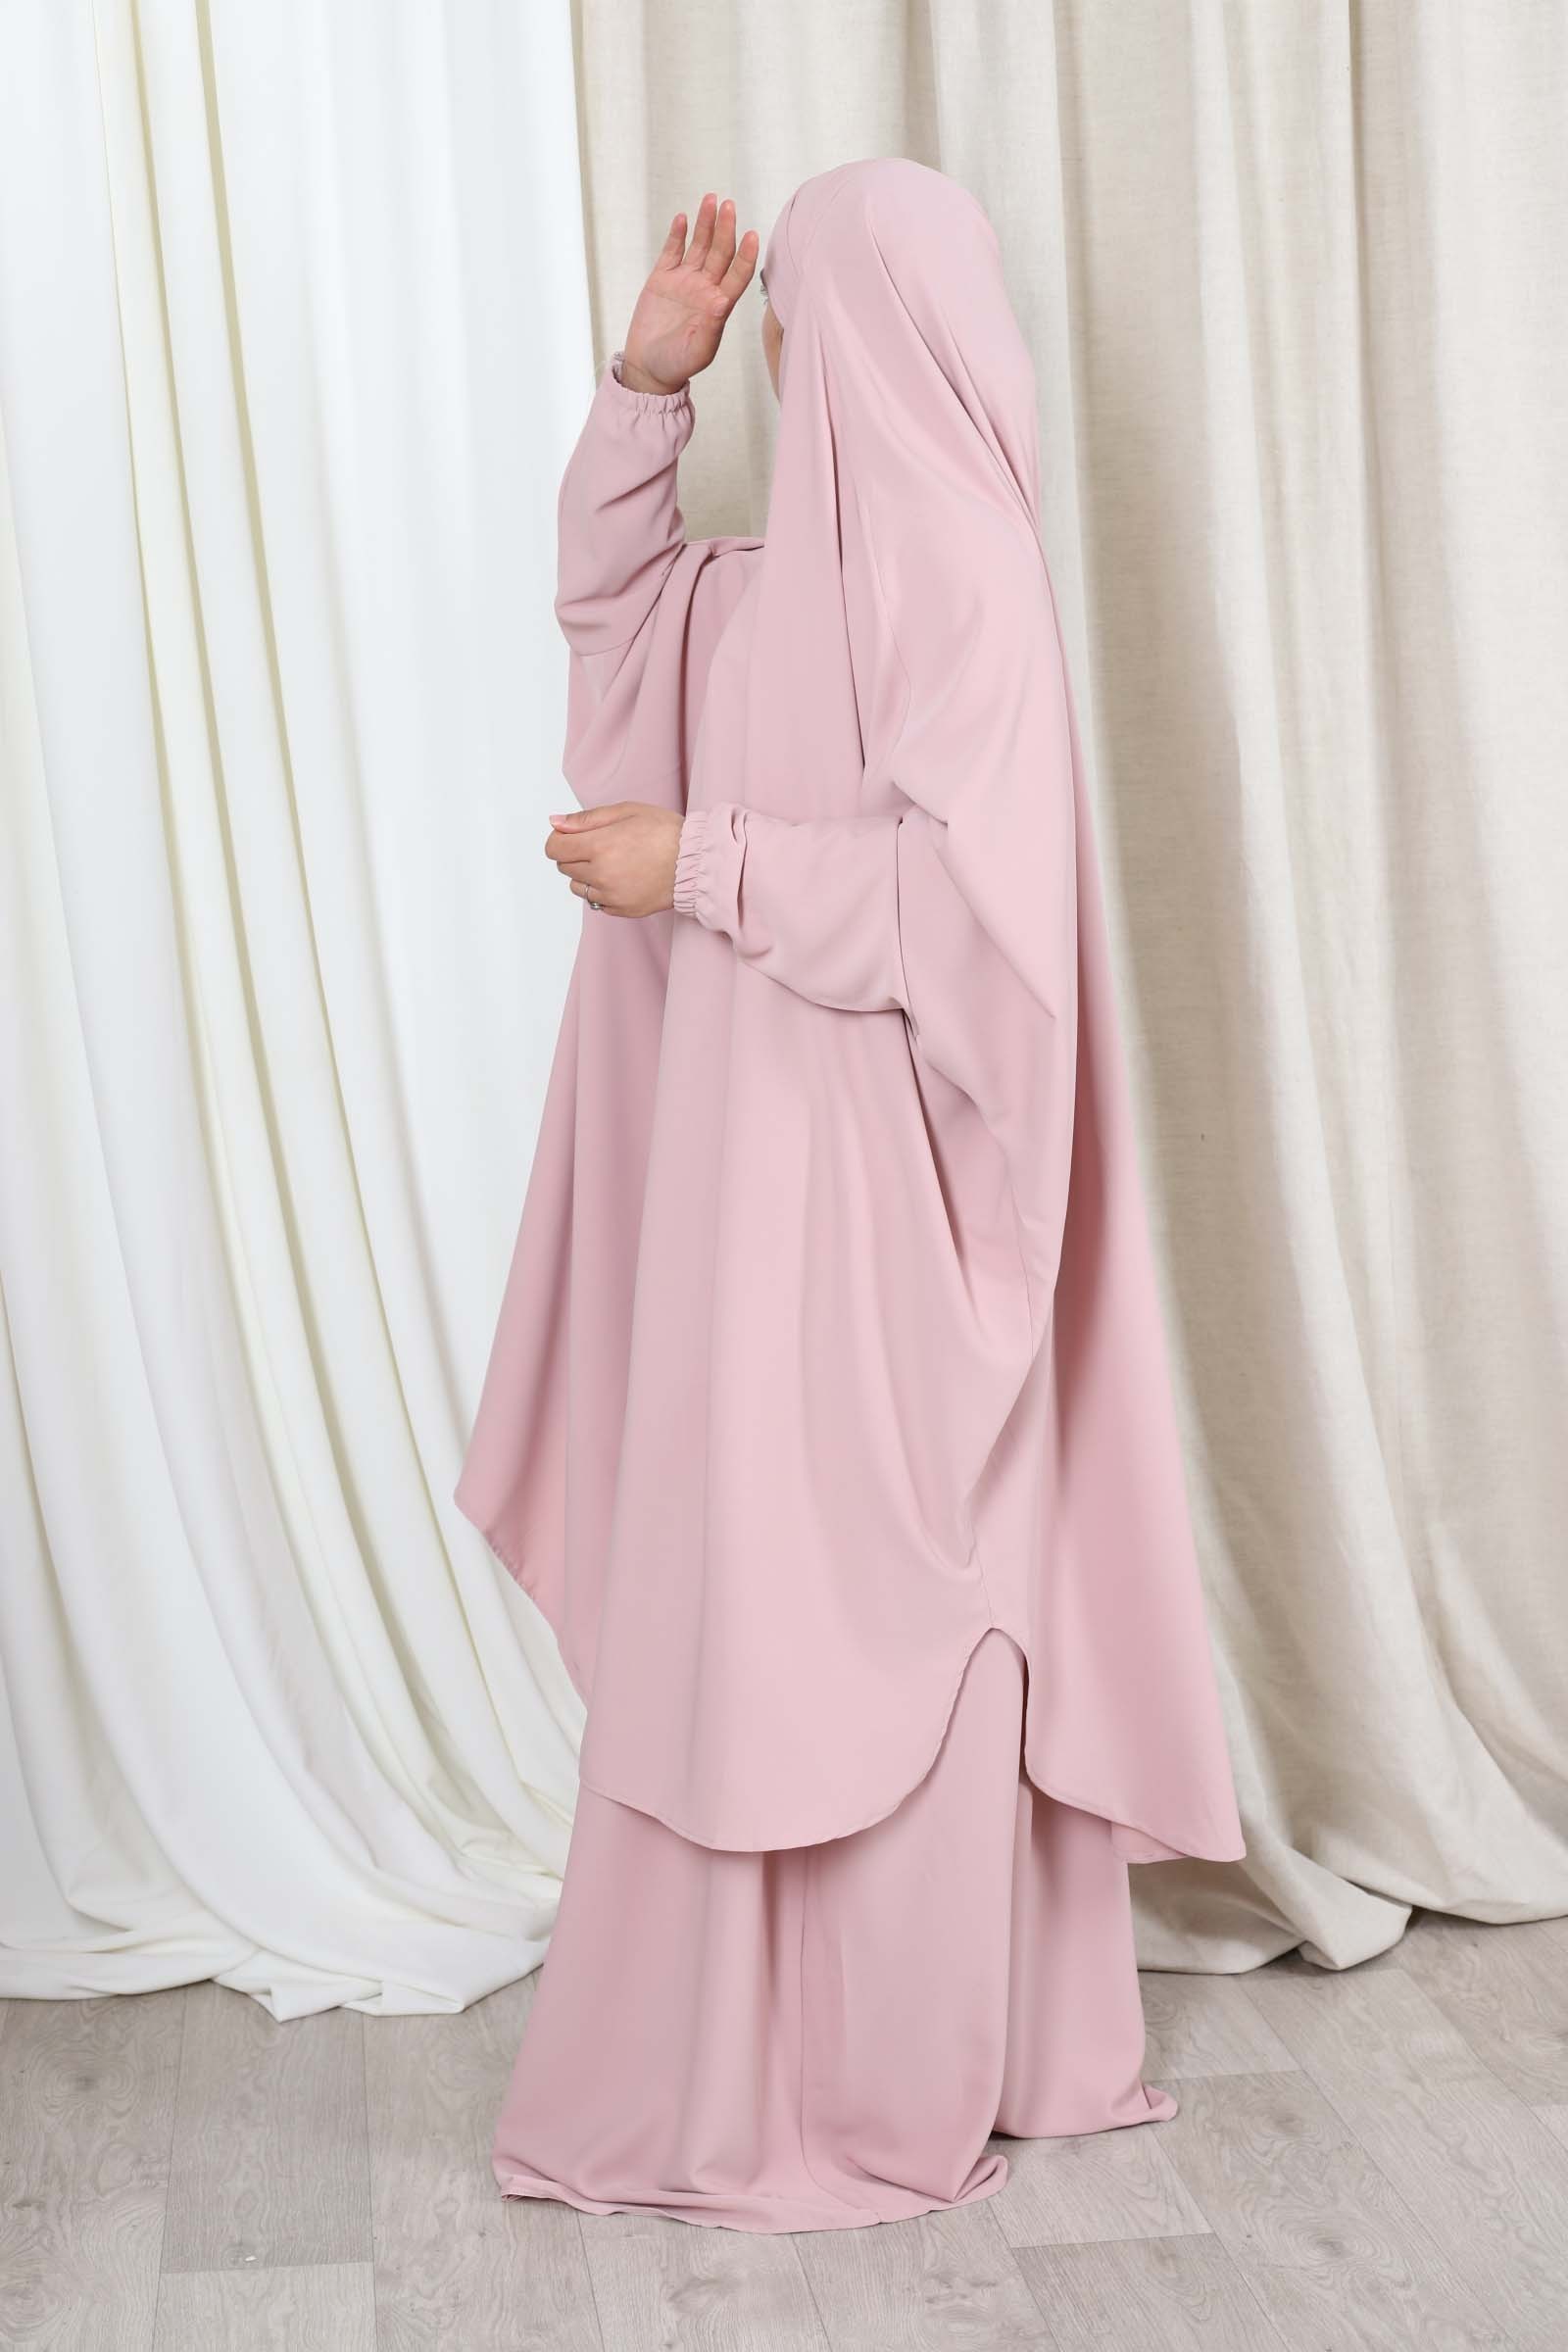 Schadelijk theorie Regenboog Jilbab met rok set - Islamwinkel